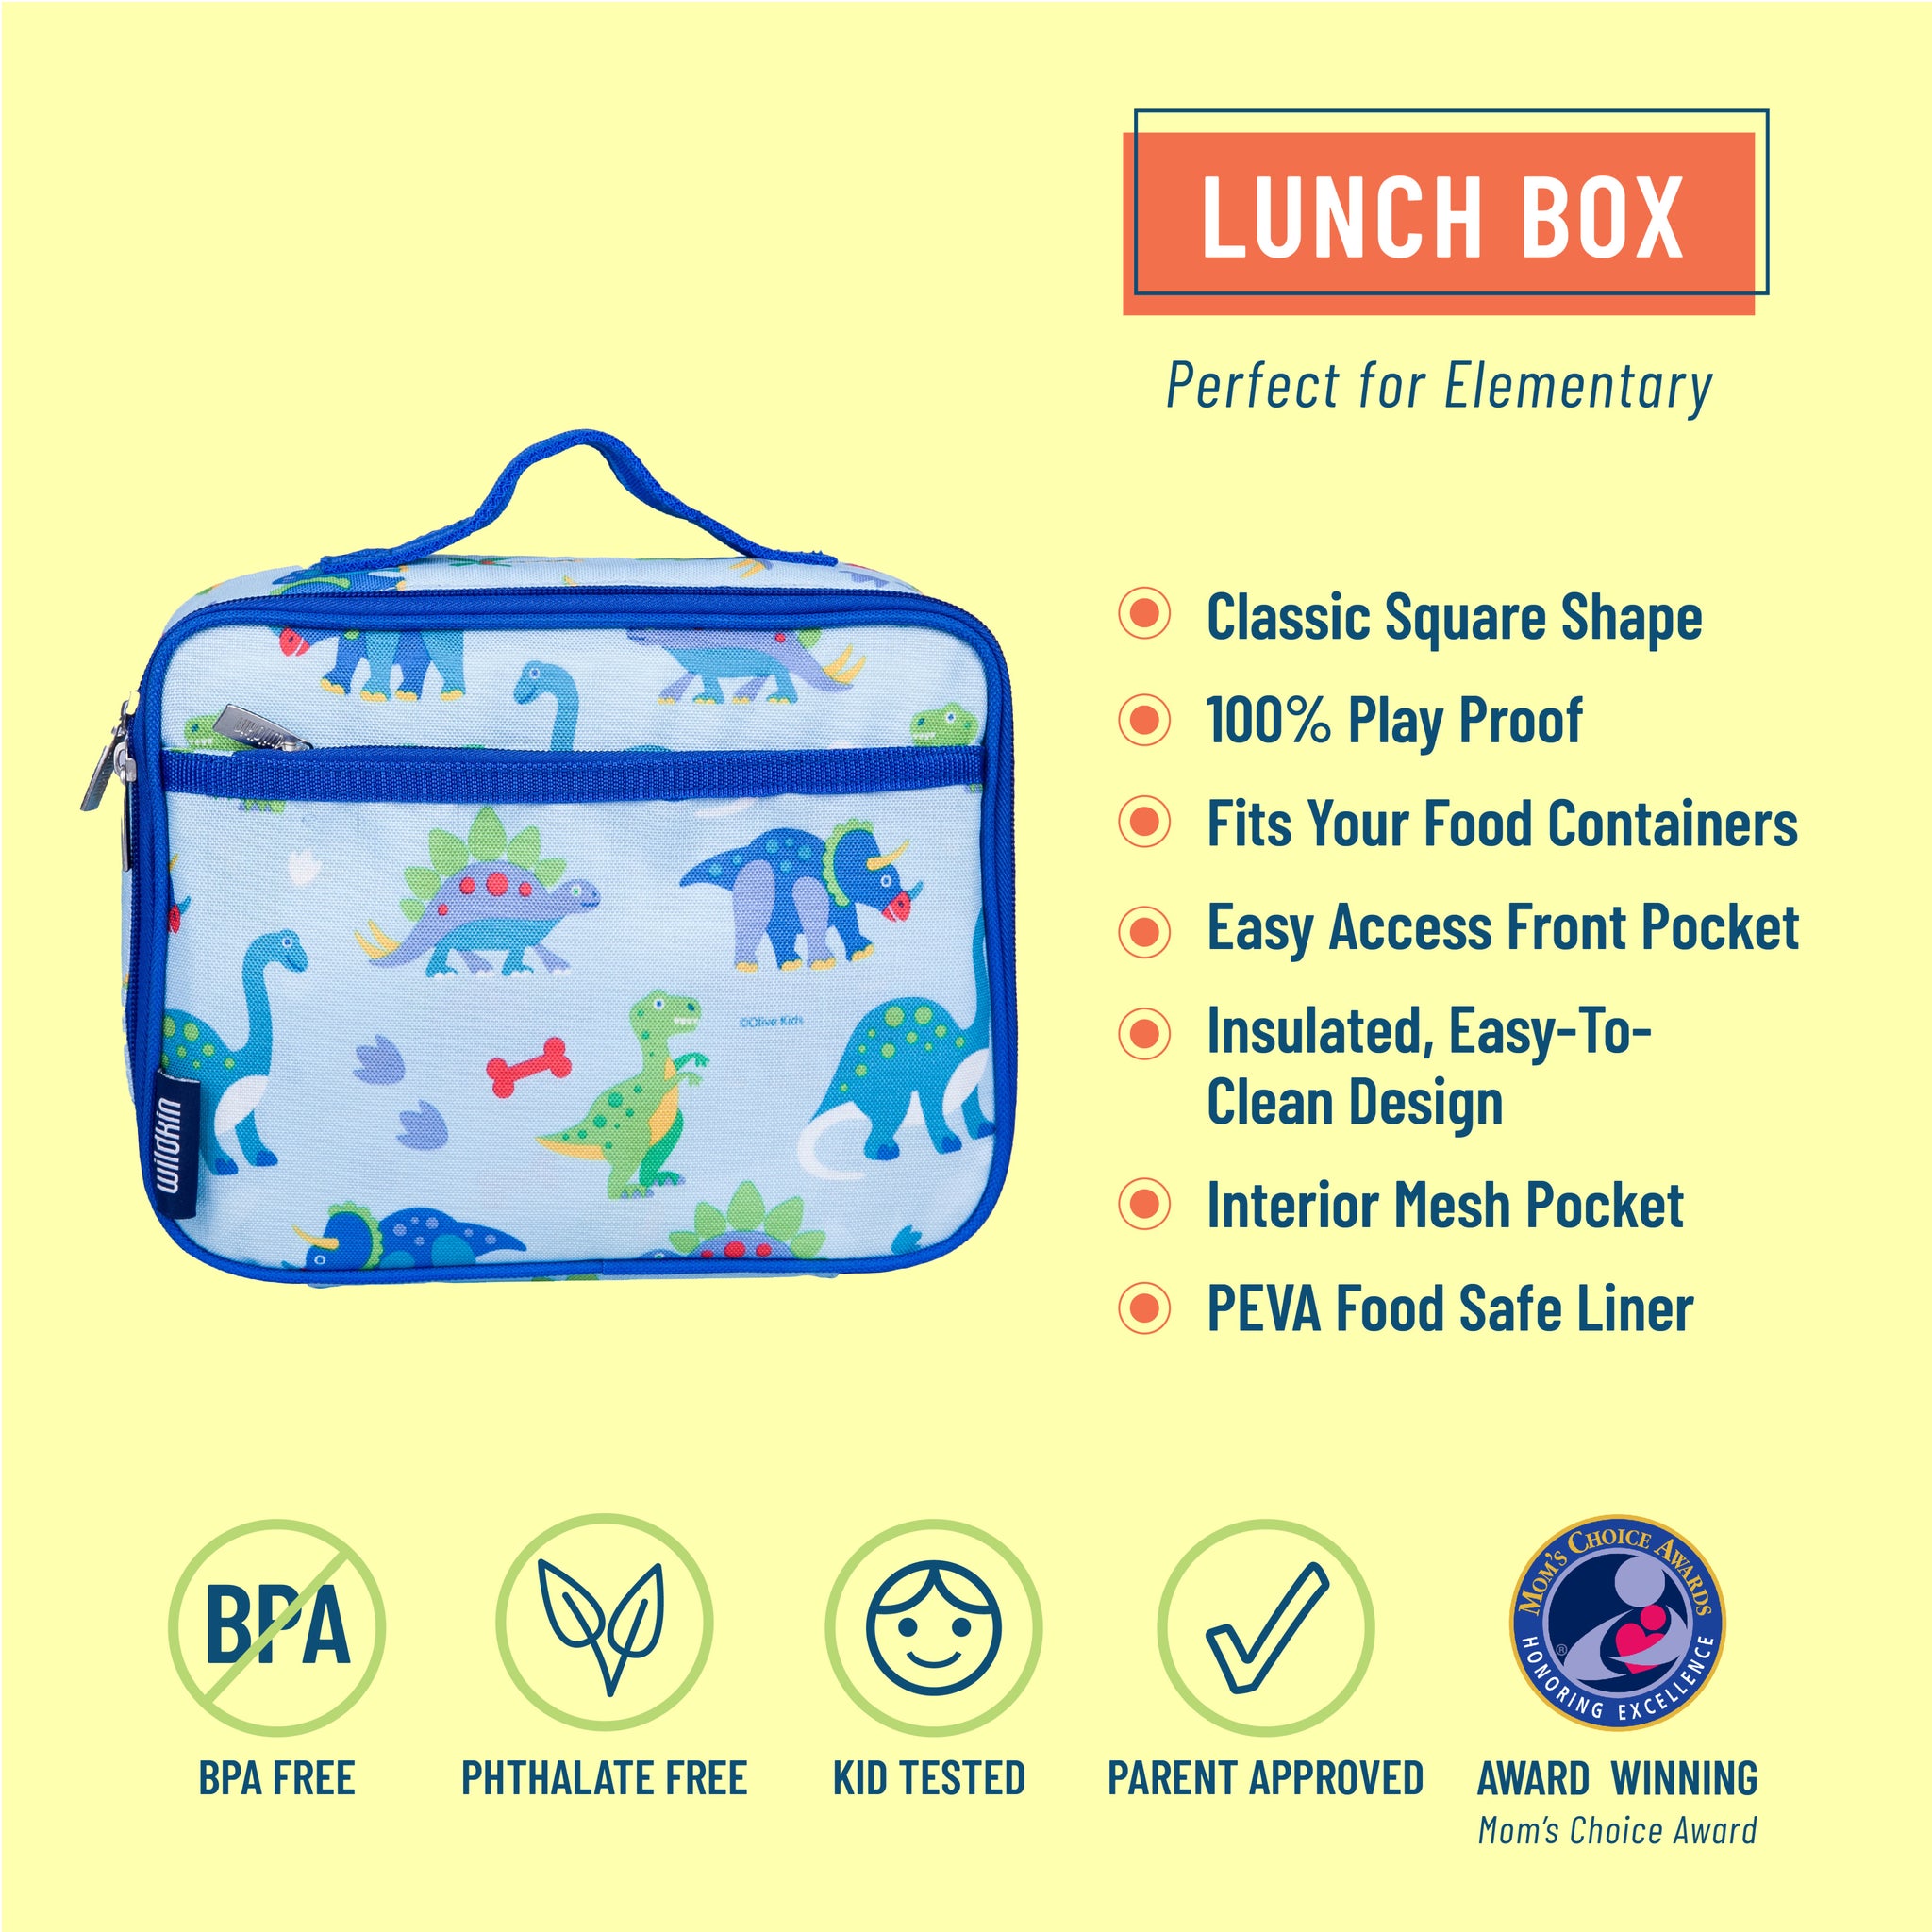 Wildkin Dinosaur Land Lunch Bag